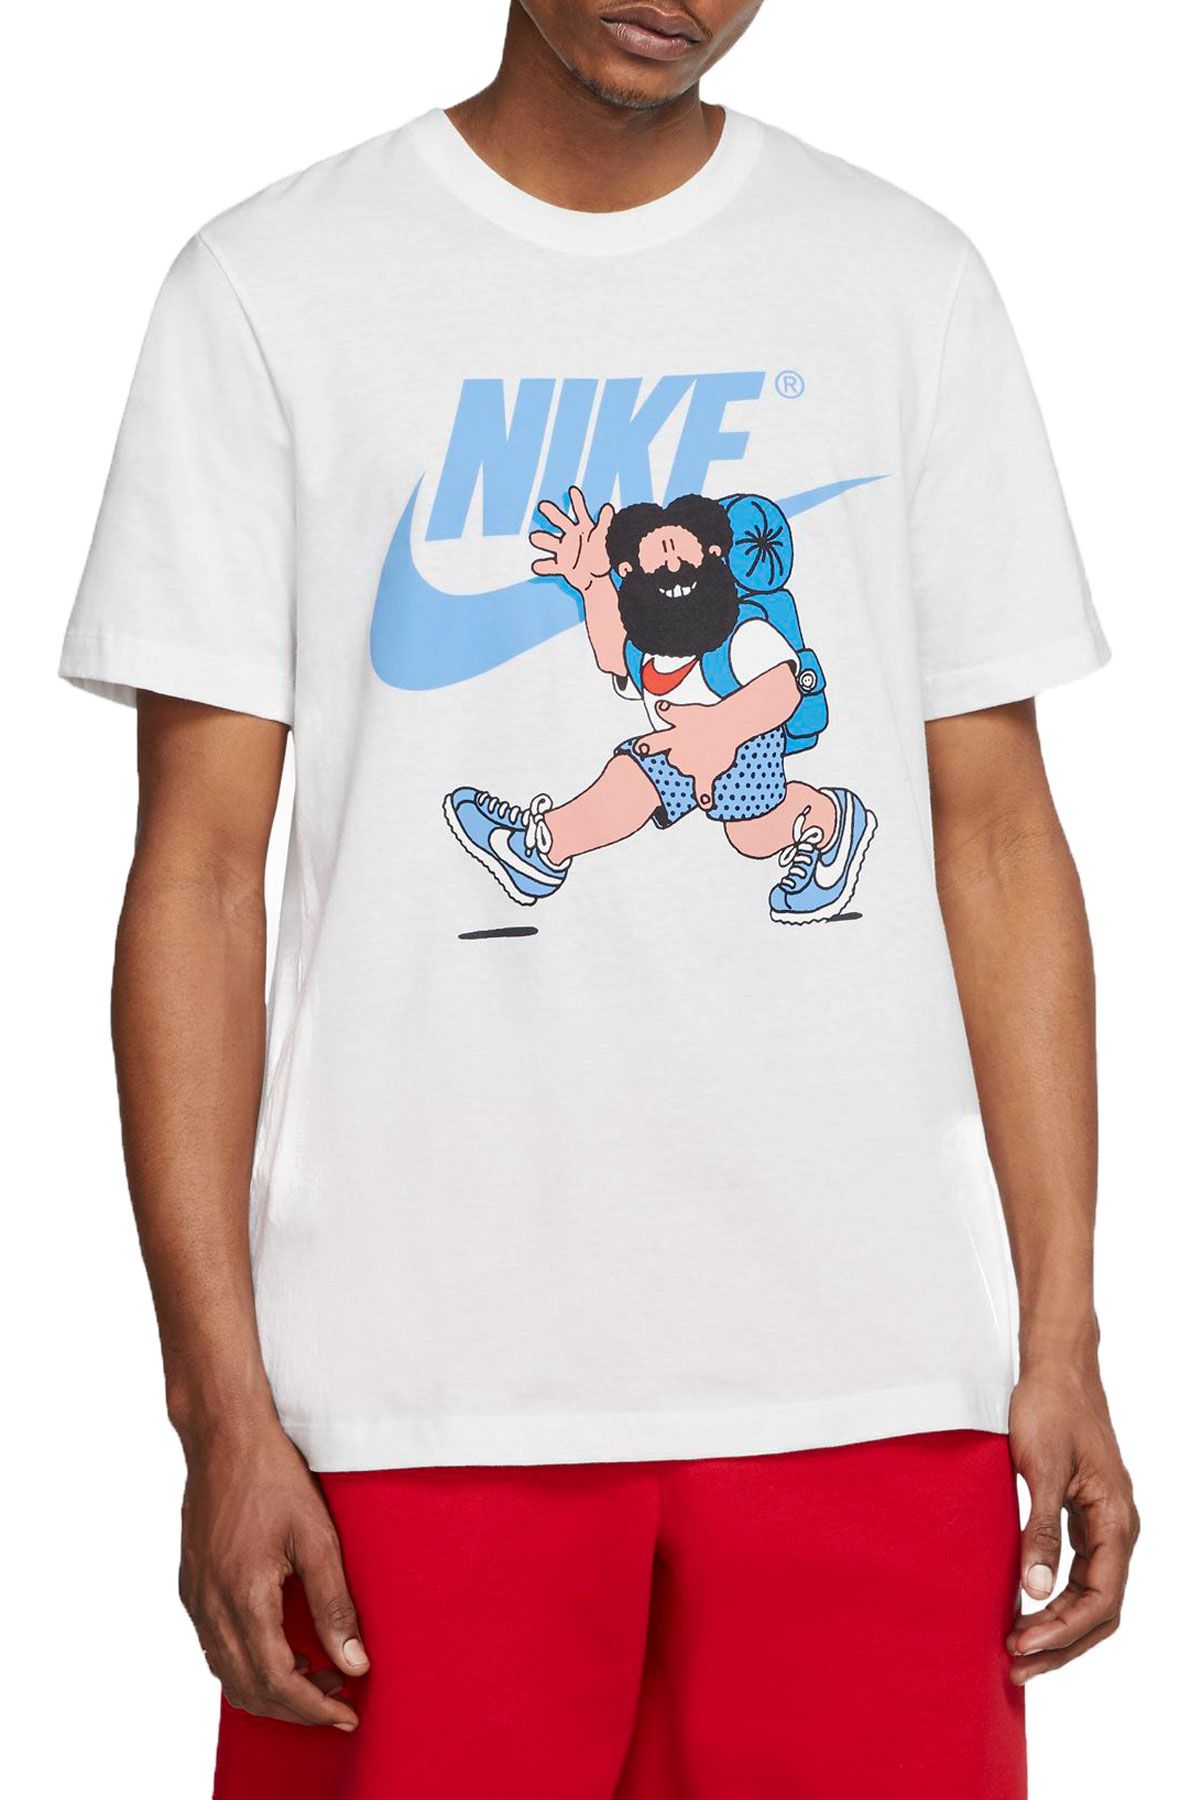 NIKE Sportswear Hike T-Shirt CW2305 100 - Shiekh